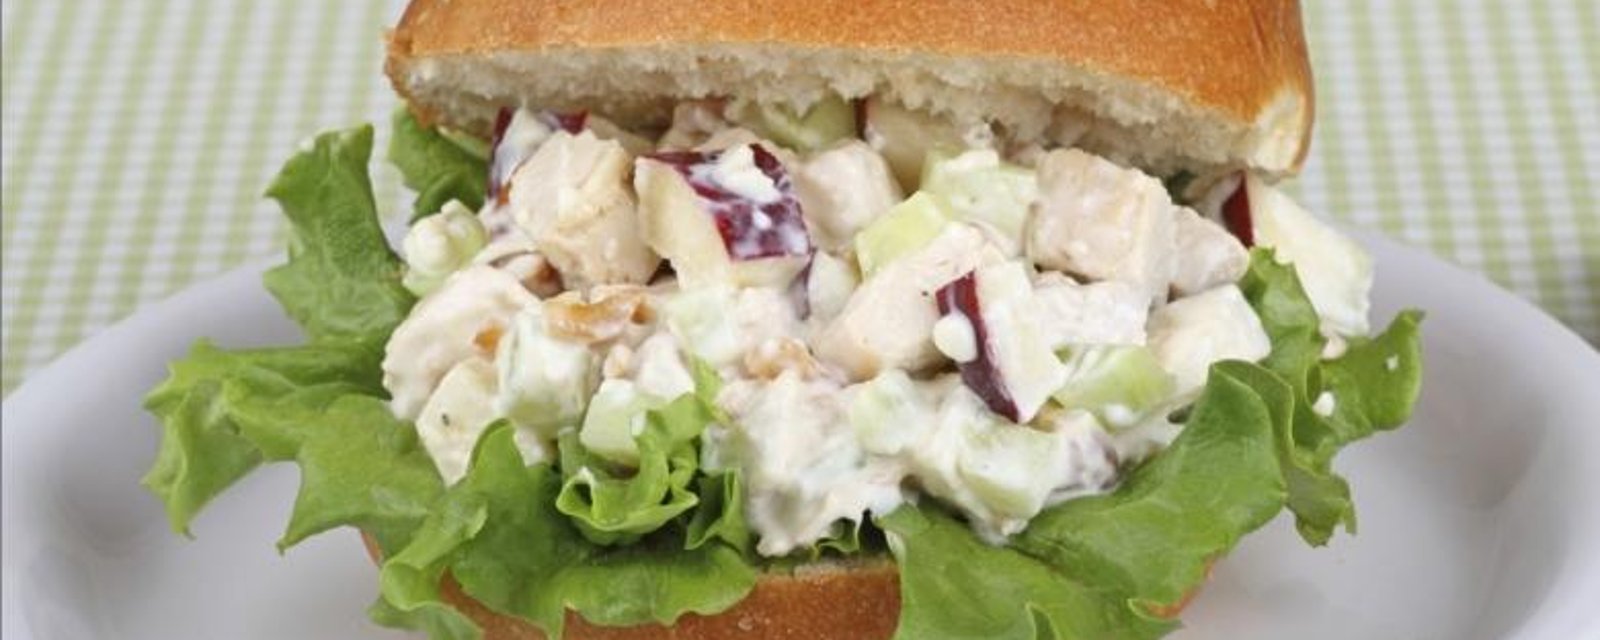 Comment cuisiner une excellente salade de poulet pour vos sandwichs 